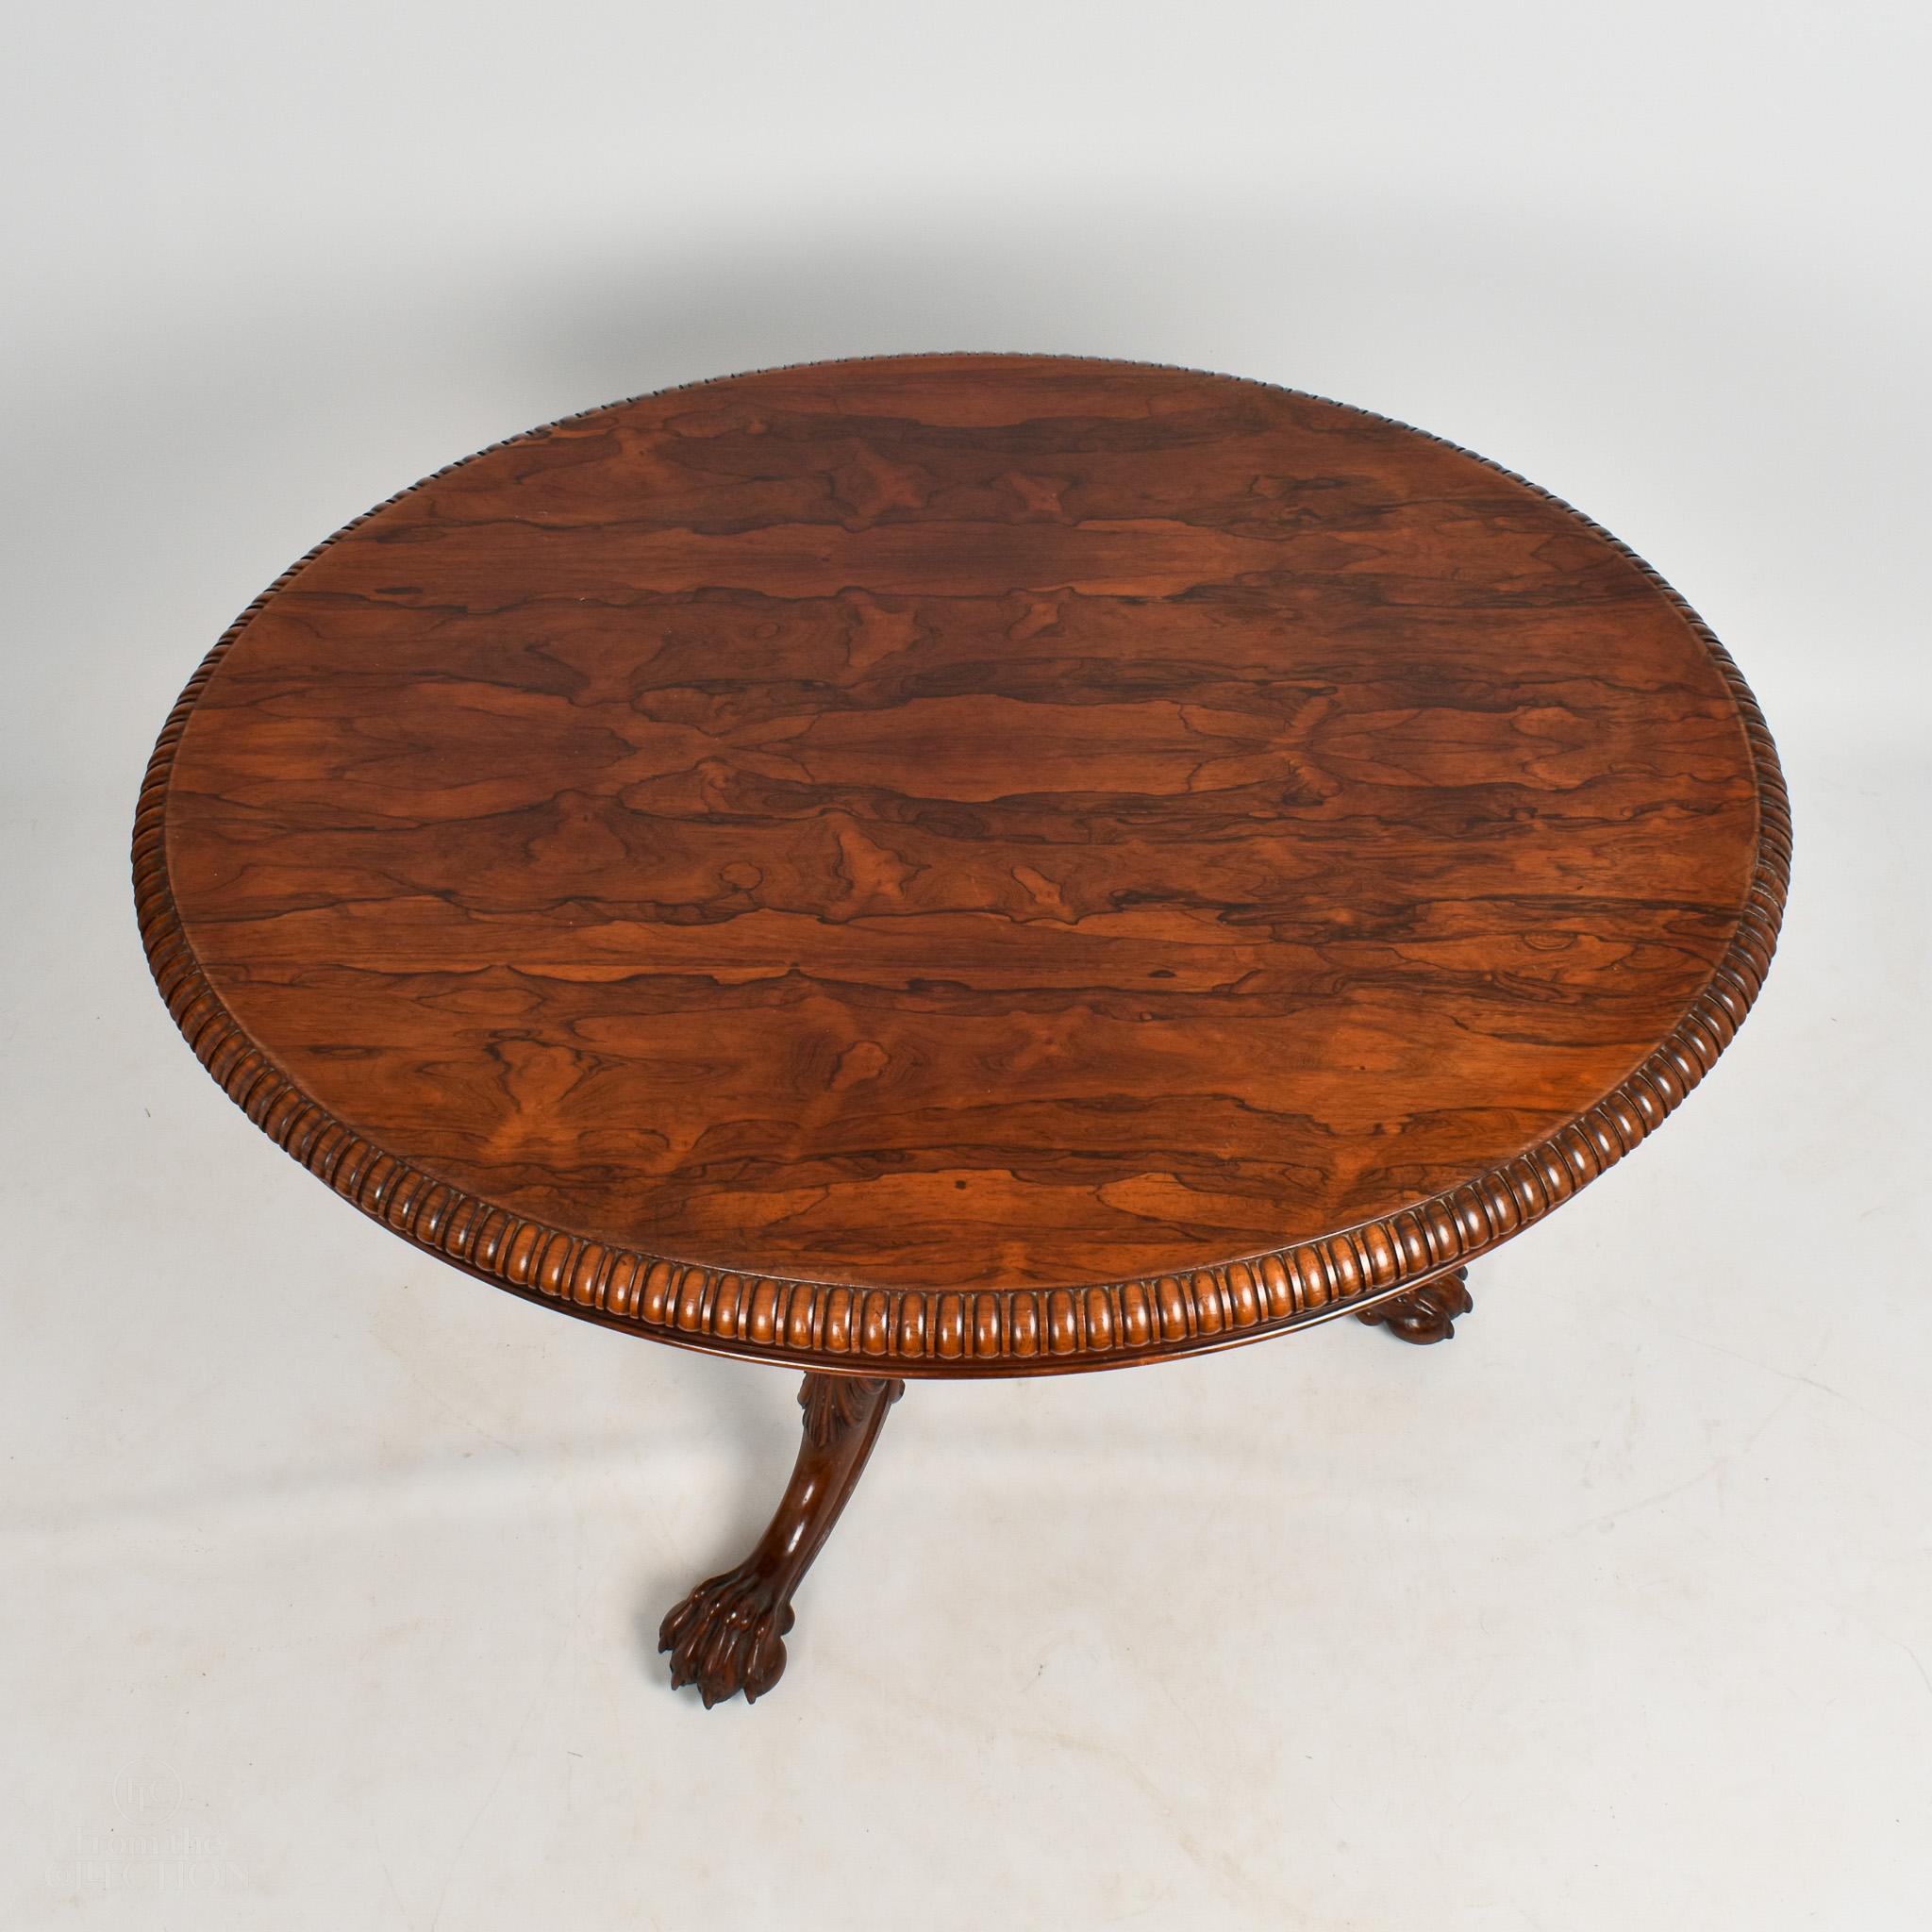 Dieser atemberaubende ovale Palisander-Mitteltisch (um 1840) ist aus einem schönen dunklen Holz gefertigt und in ausgezeichnetem Zustand. Gestempelt Gillows und mit schönen geschnitzten gadrooned Einfassung. Mittelsockel bis zu drei gespreizten